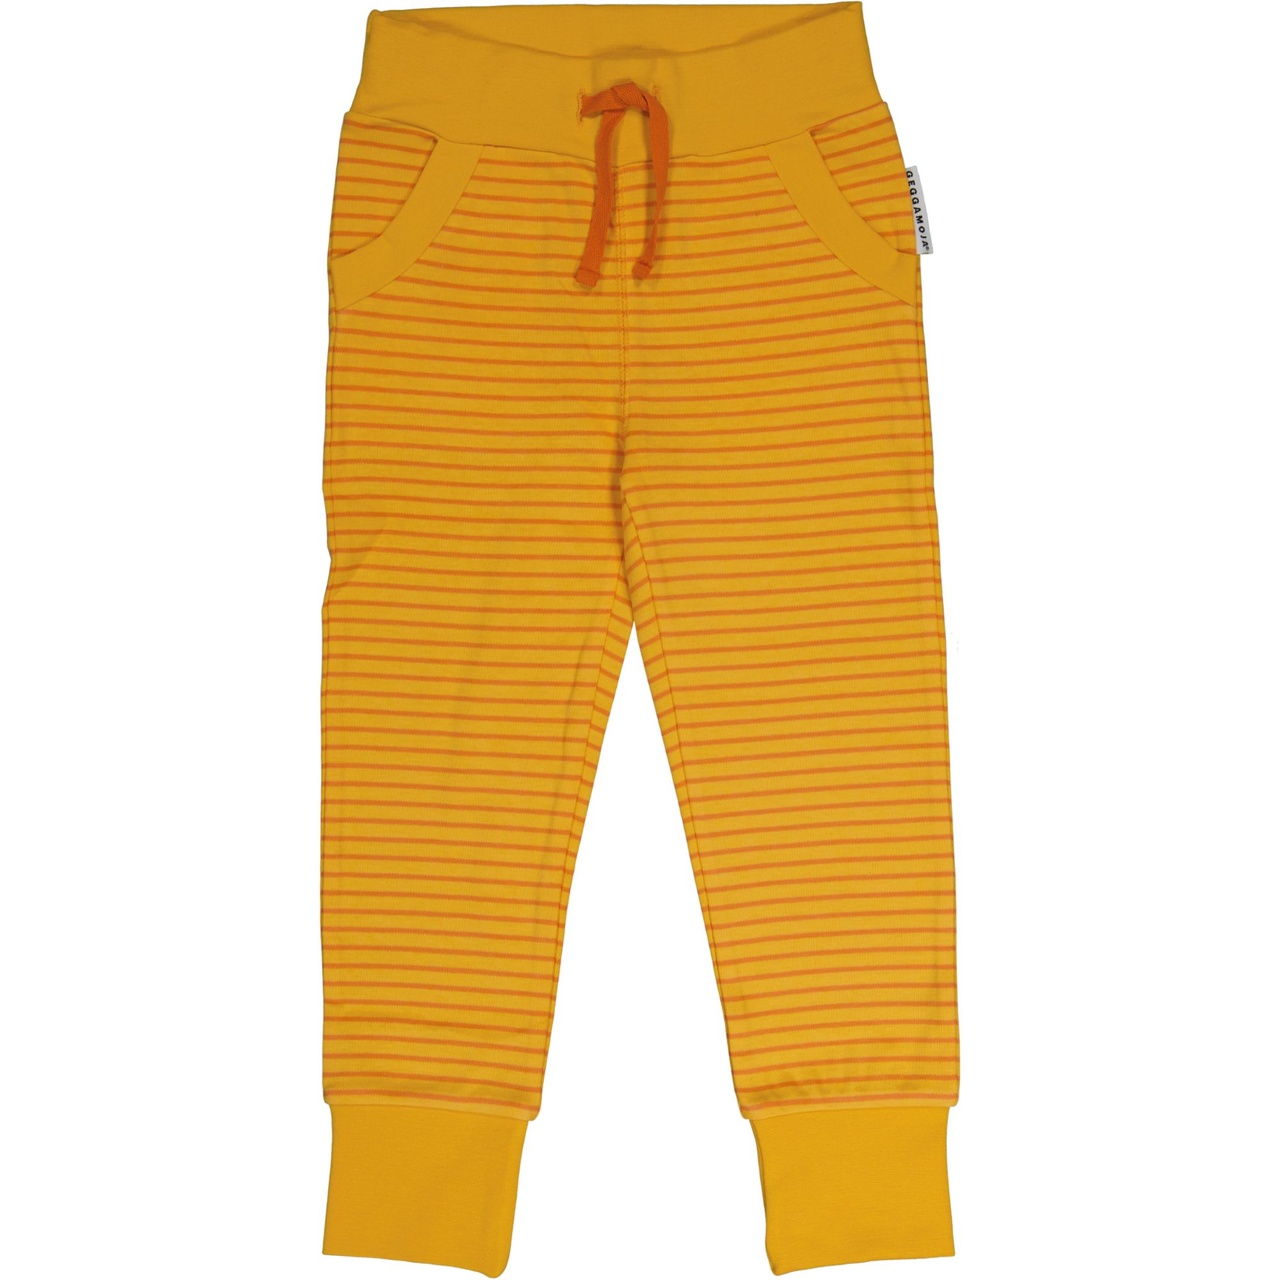 Long pants Orange str 98/104